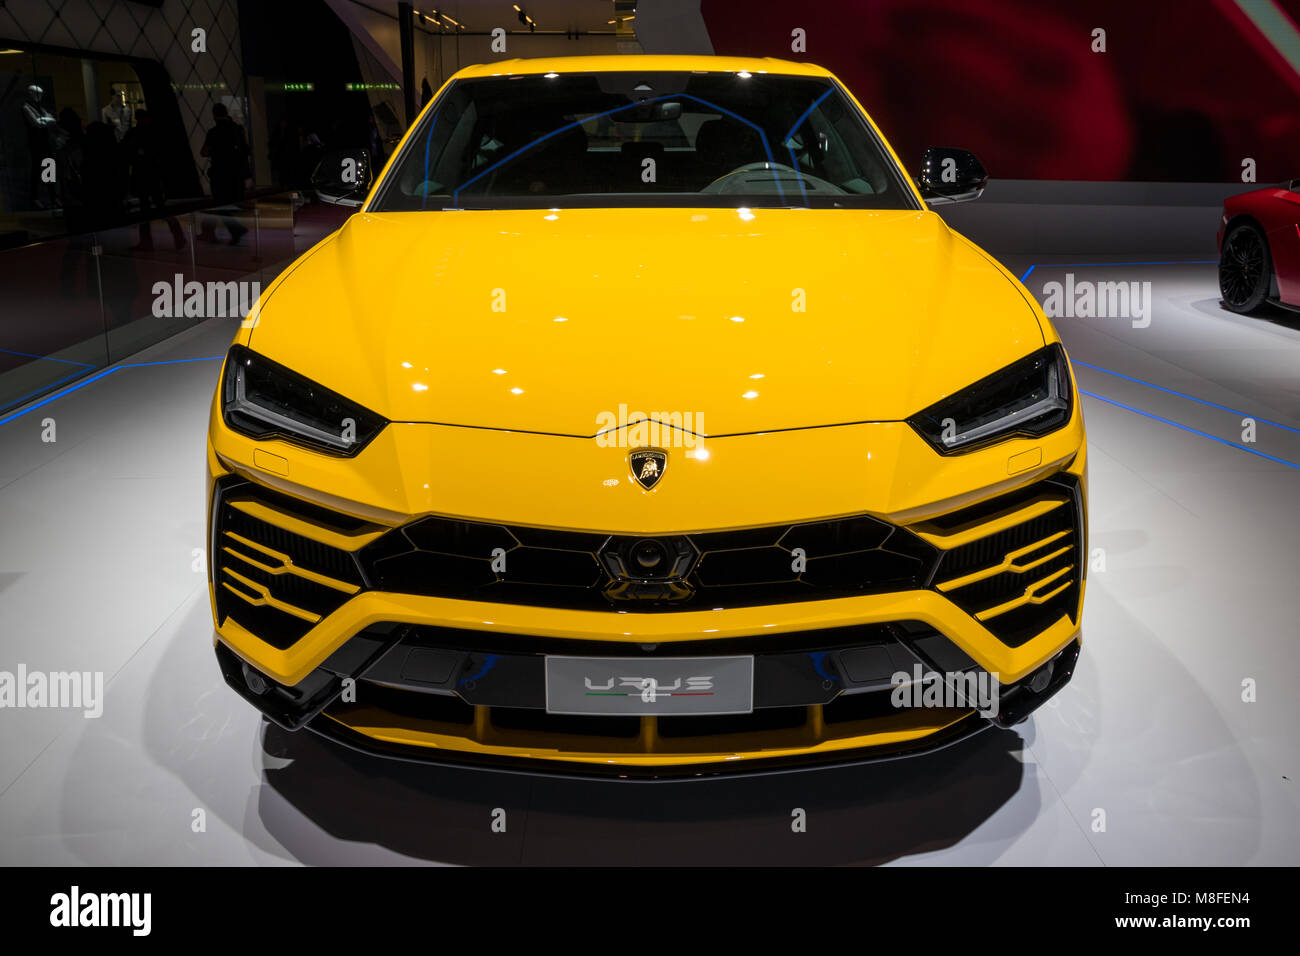 Genf, Schweiz - 7. MÄRZ 2018: Neue Lamborghini Urus SUV-Auto auf dem 88. Internationalen Automobilsalon in Genf präsentiert. Stockfoto